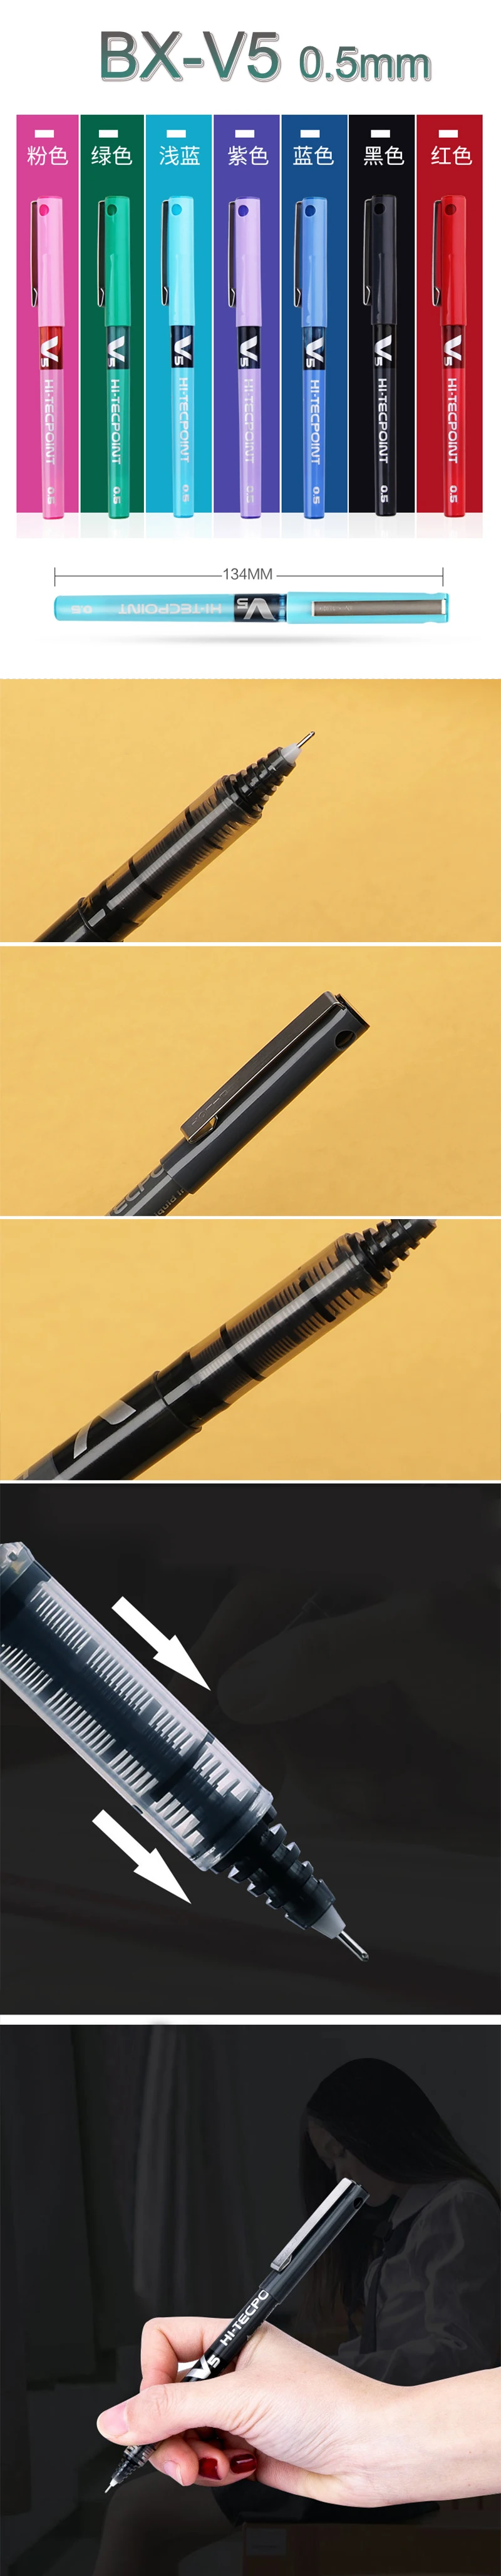 7 шт/лот, японская ручка Pilot V5 с жидкими чернилами, 0,5 мм, 7 цветов на выбор, BX-V5, стандартная ручка для офиса и школы, канцелярские принадлежности